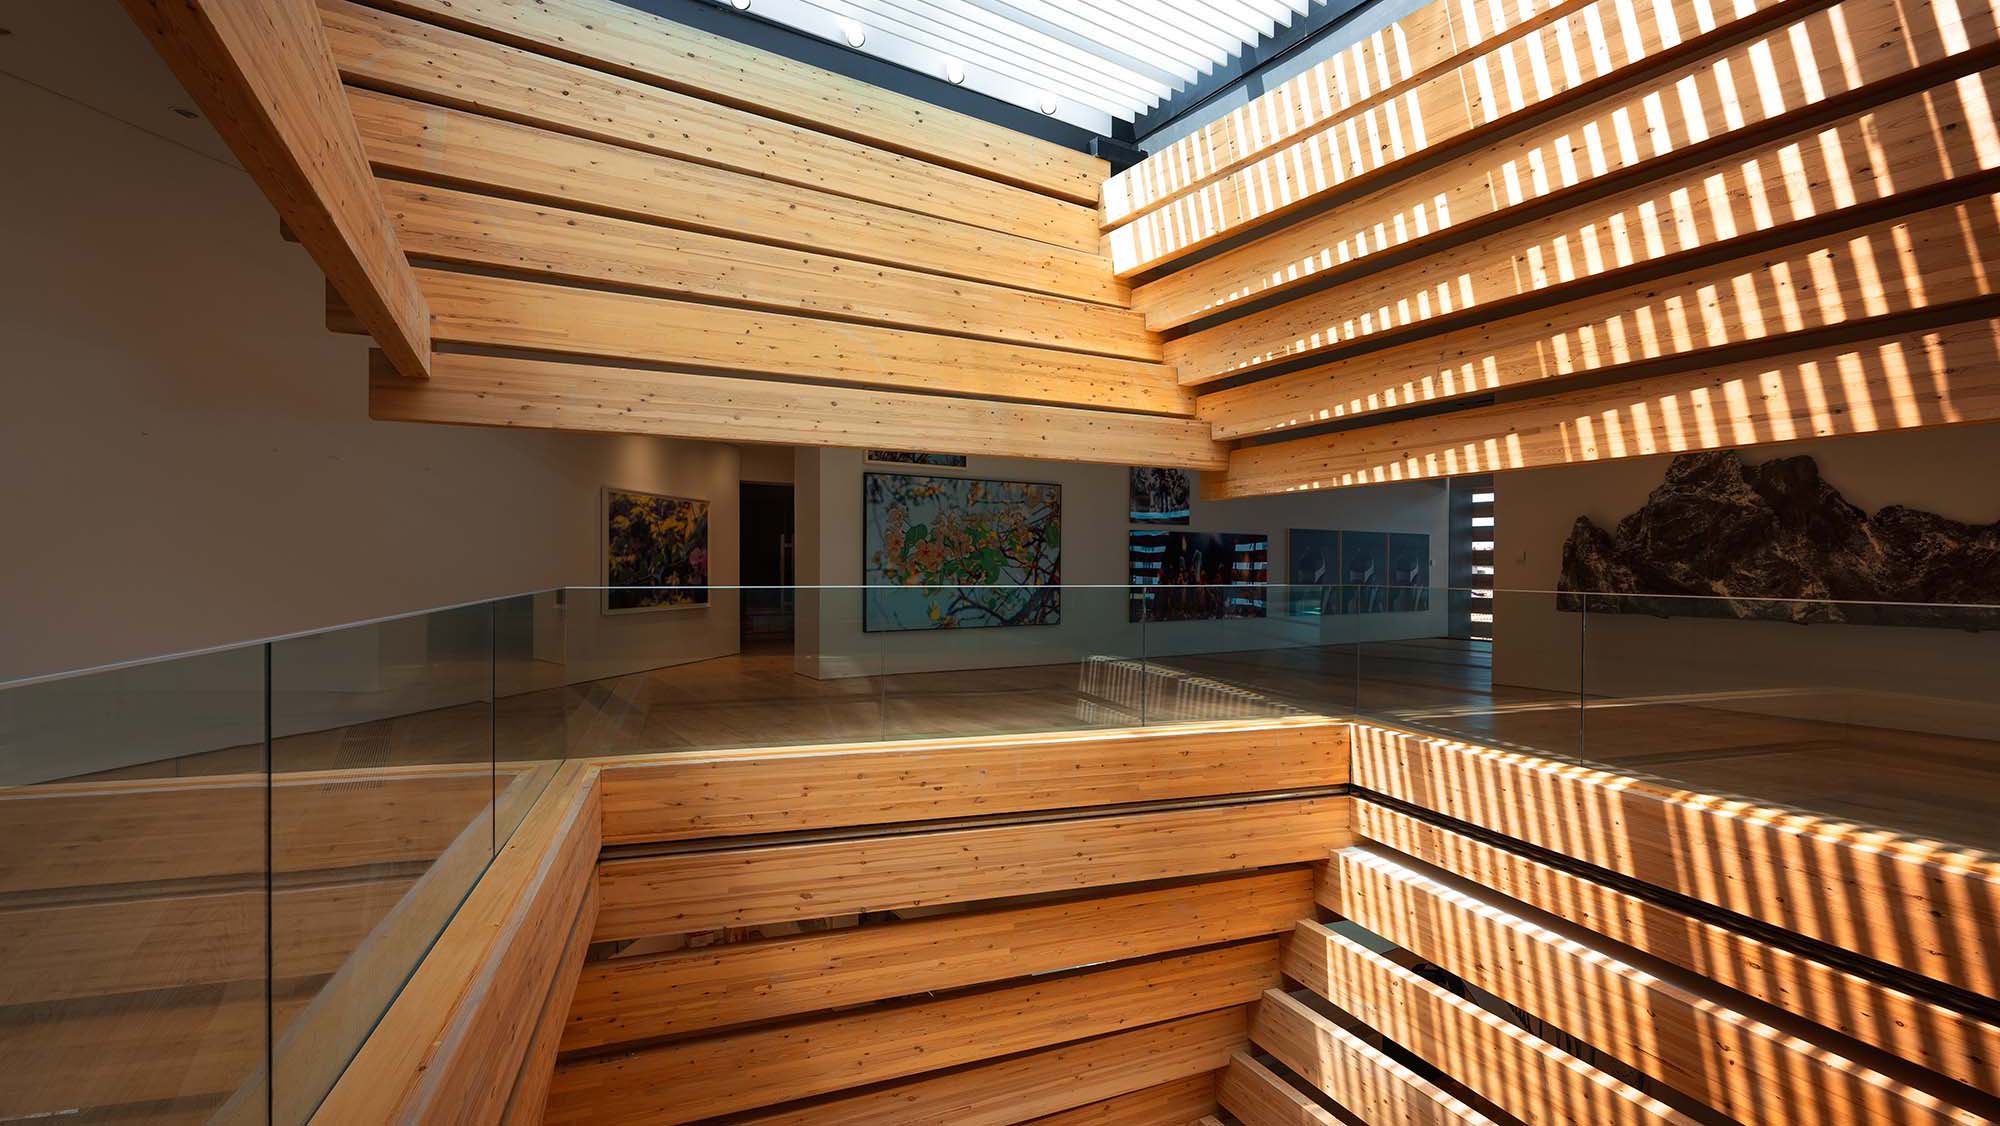 OMM - Odunpazarı Modern Müze, iç mekandan görünüm, 3. kat. Fotoğraf: Batuhan Keskiner